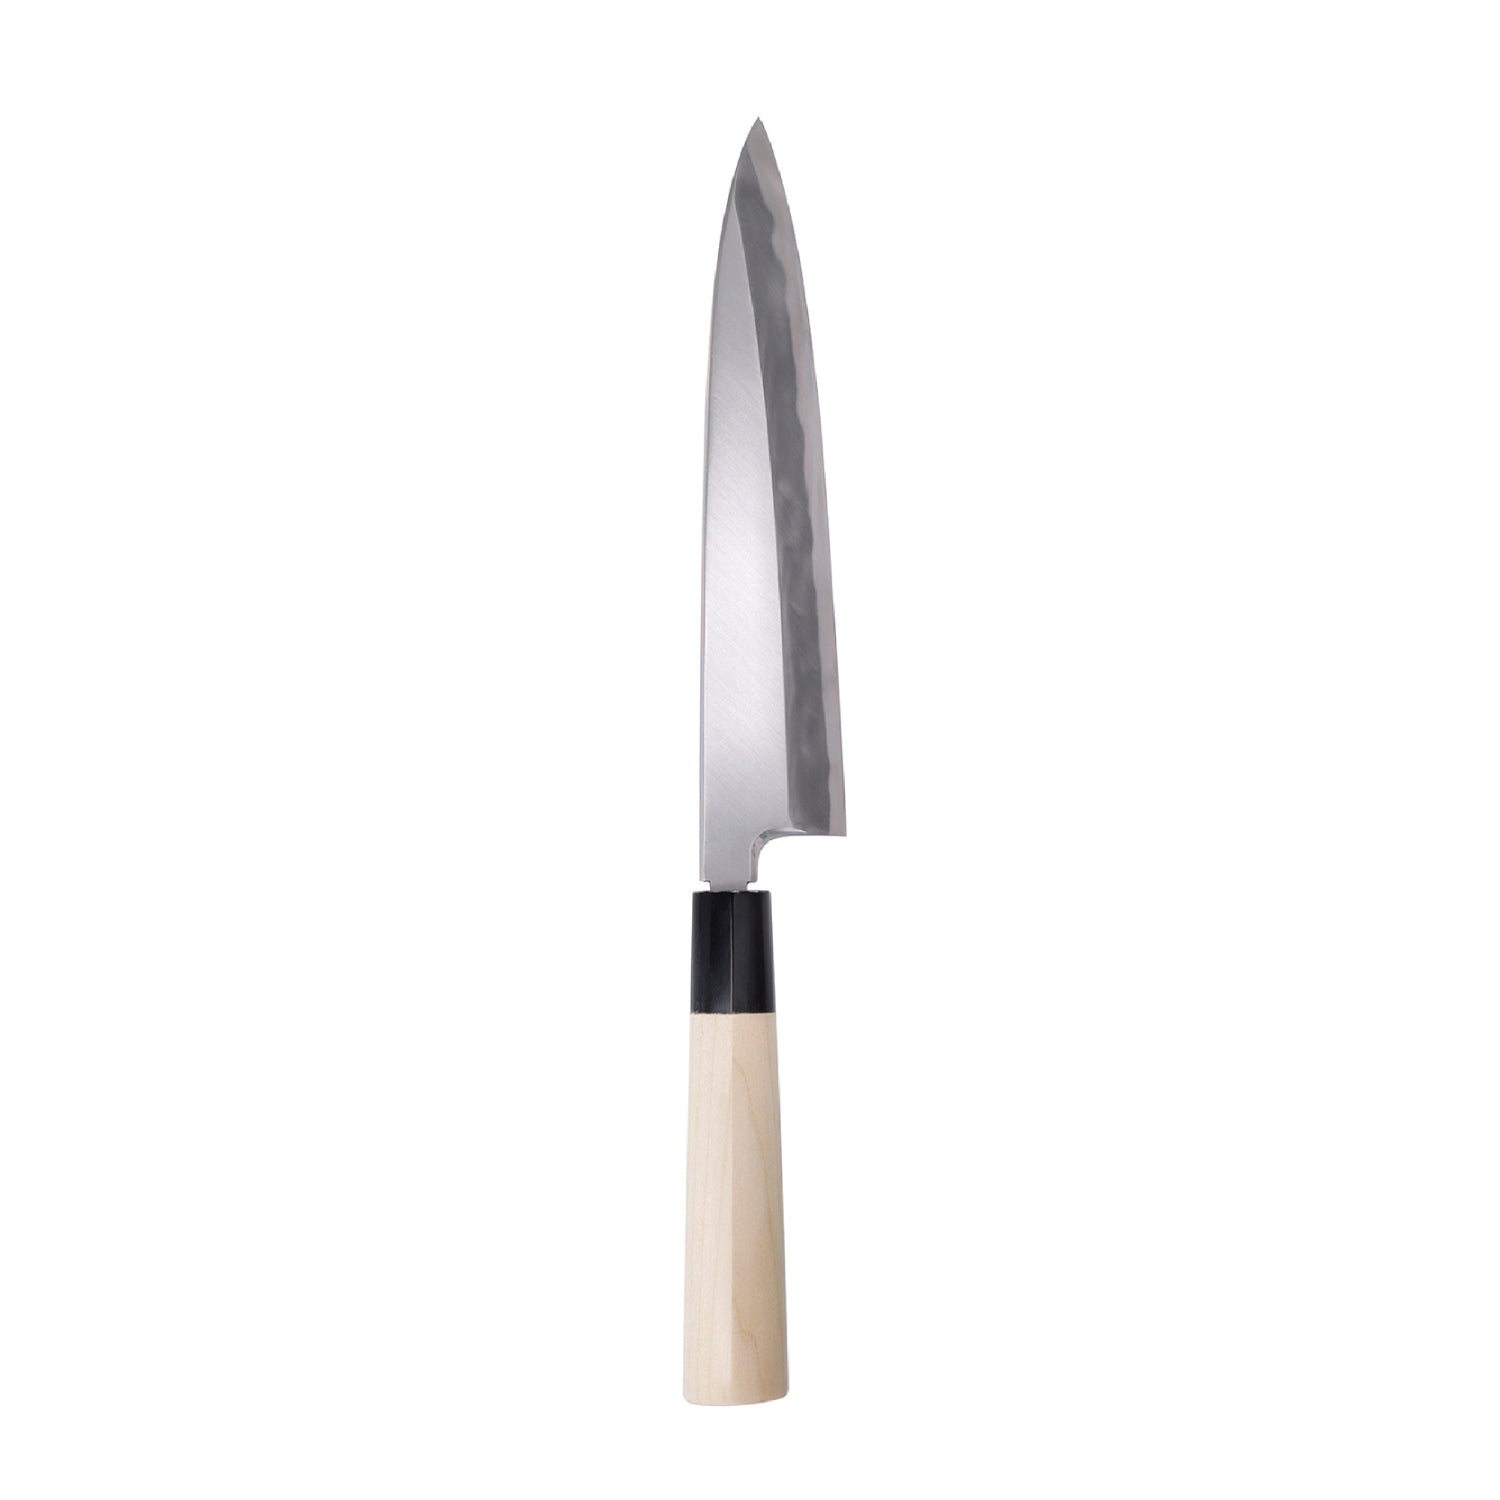 Shirogami No. 2 Yanagi Deba knife 210mm